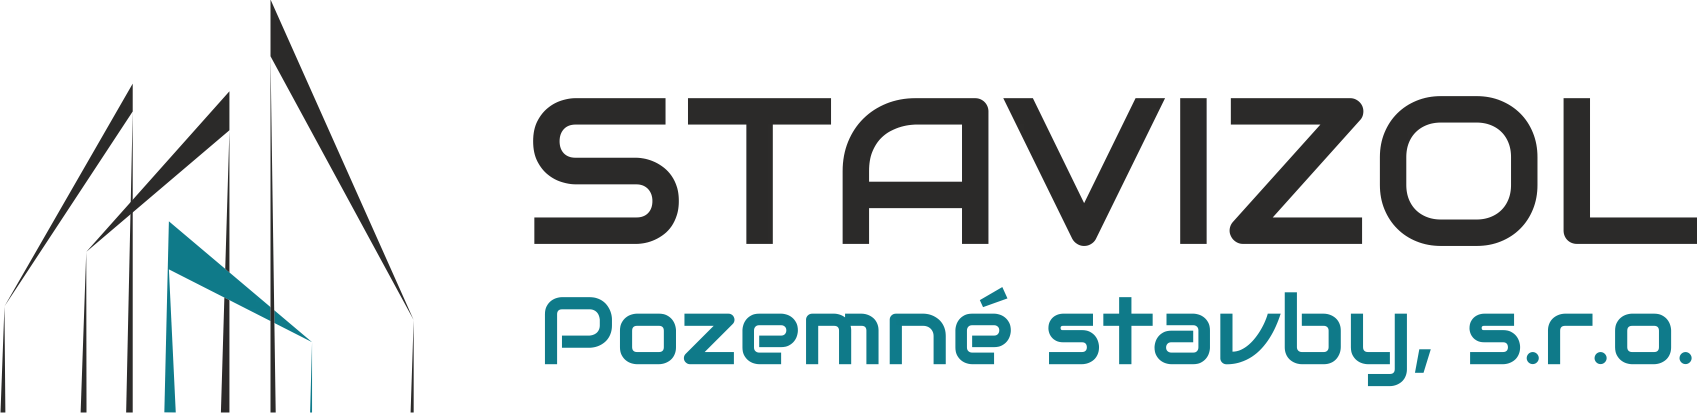 logo-stavizol-tsmslaviask